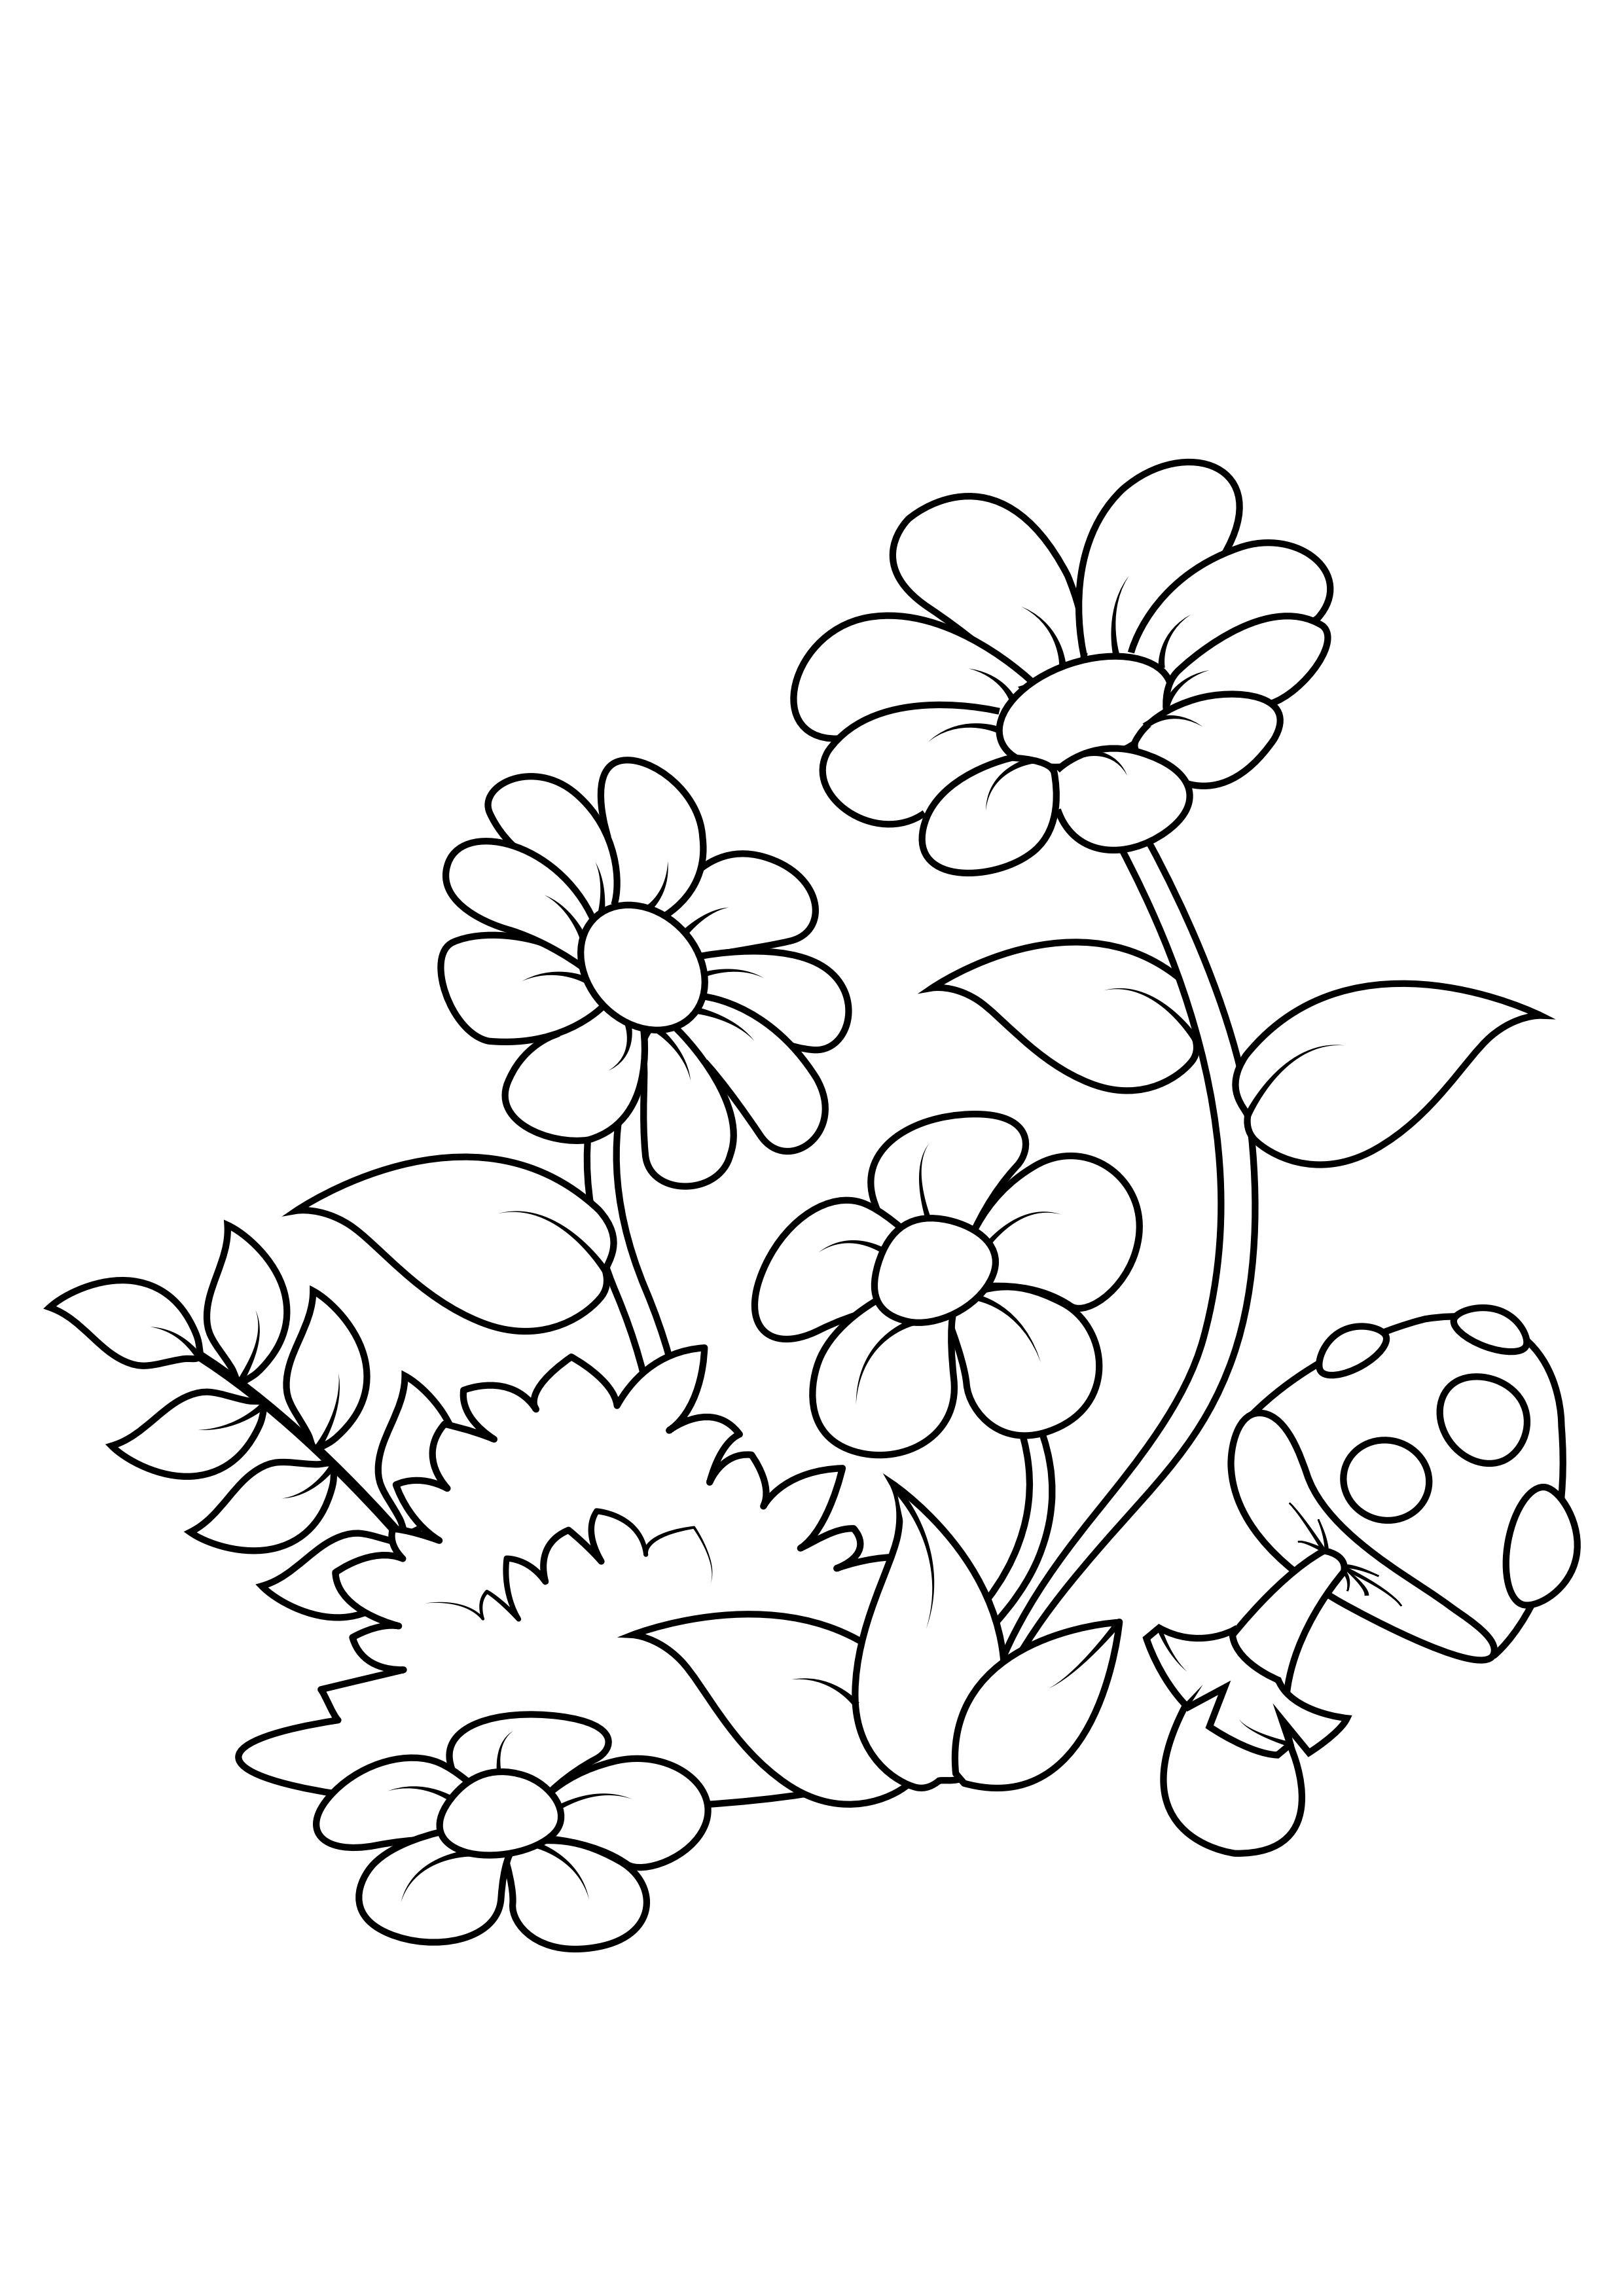 Dibujo para colorear flores en el bosque - Dibujos Para Imprimir Gratis -  Img 31856